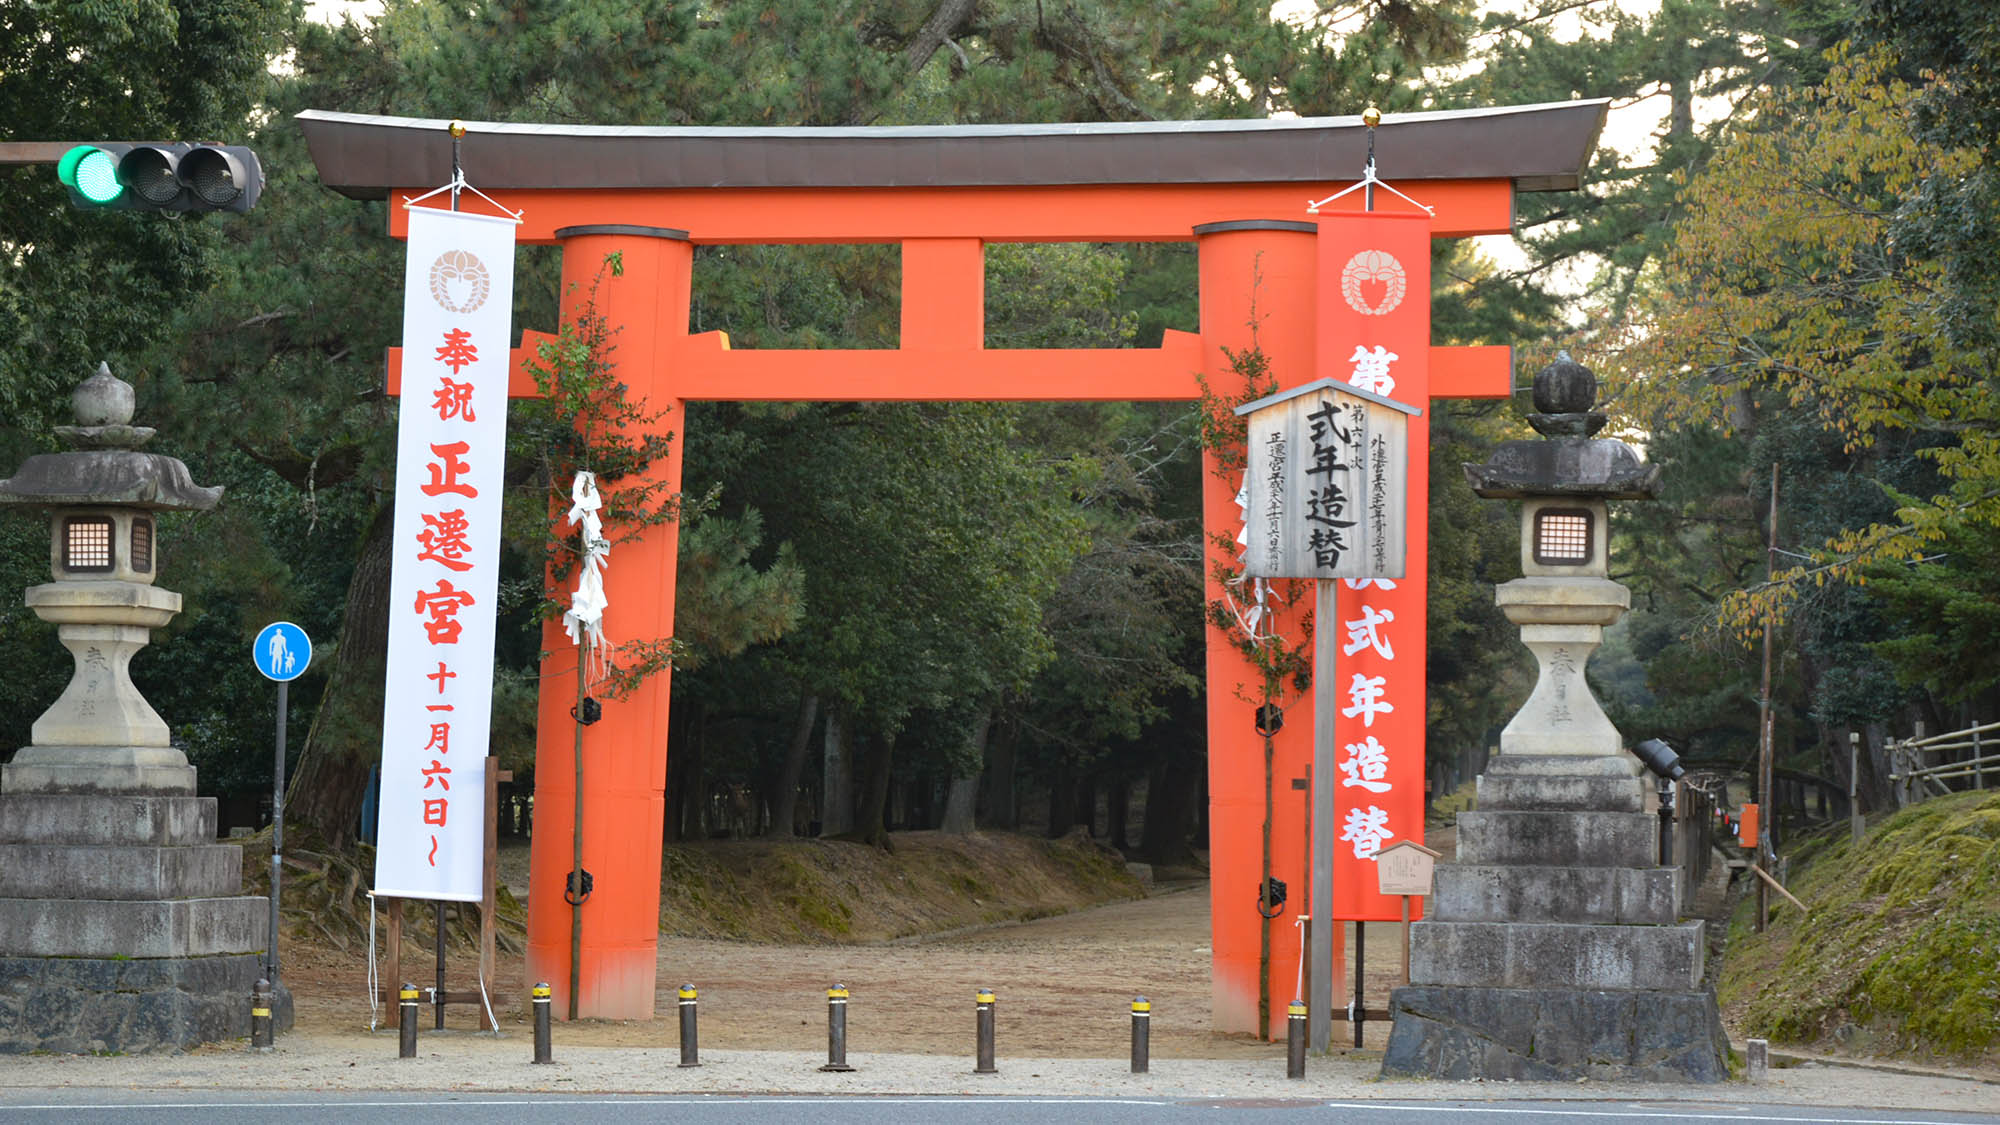 ・【周辺】奈良の神社仏閣へのアクセスの良さは◎観光の拠点にぜひご利用ください